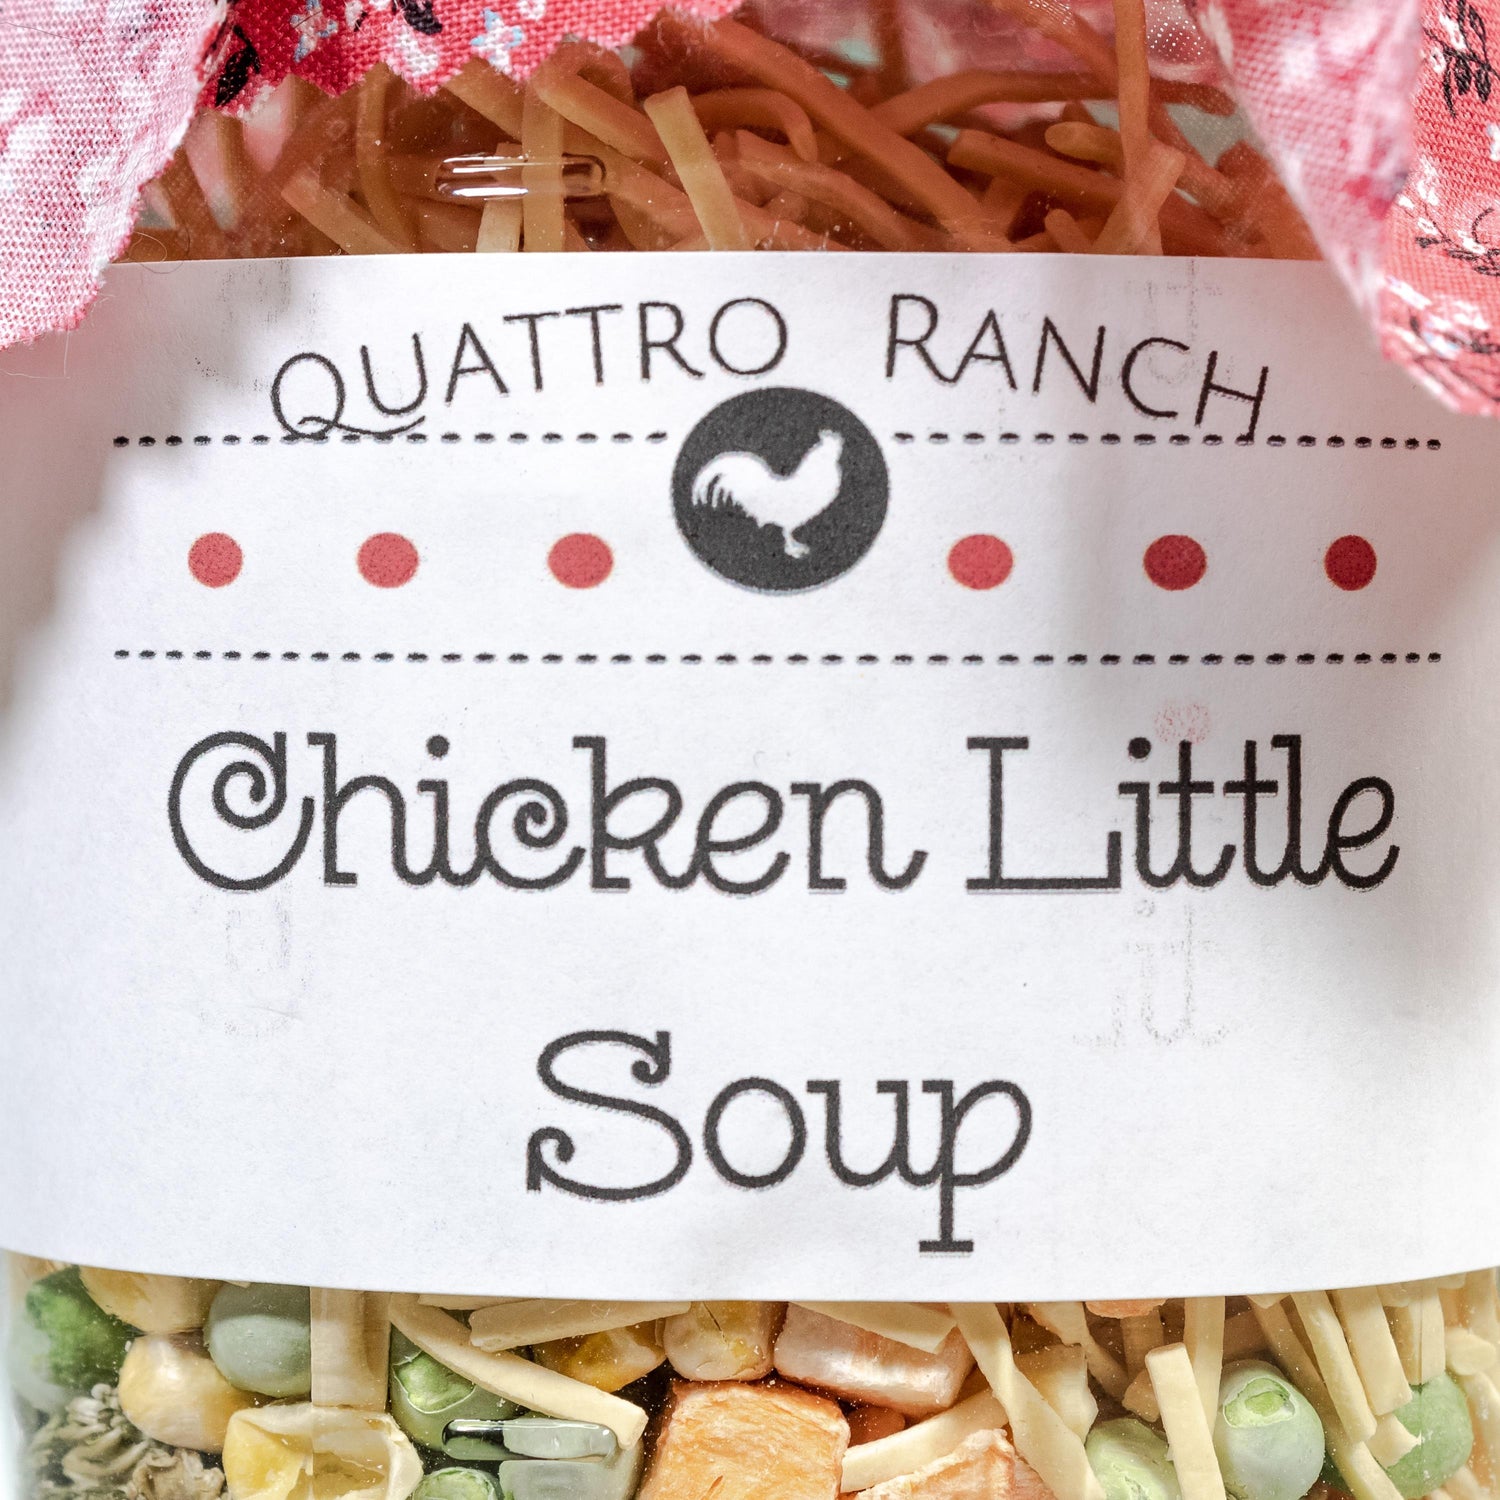 Quattro Ranch Chicken Little Soup